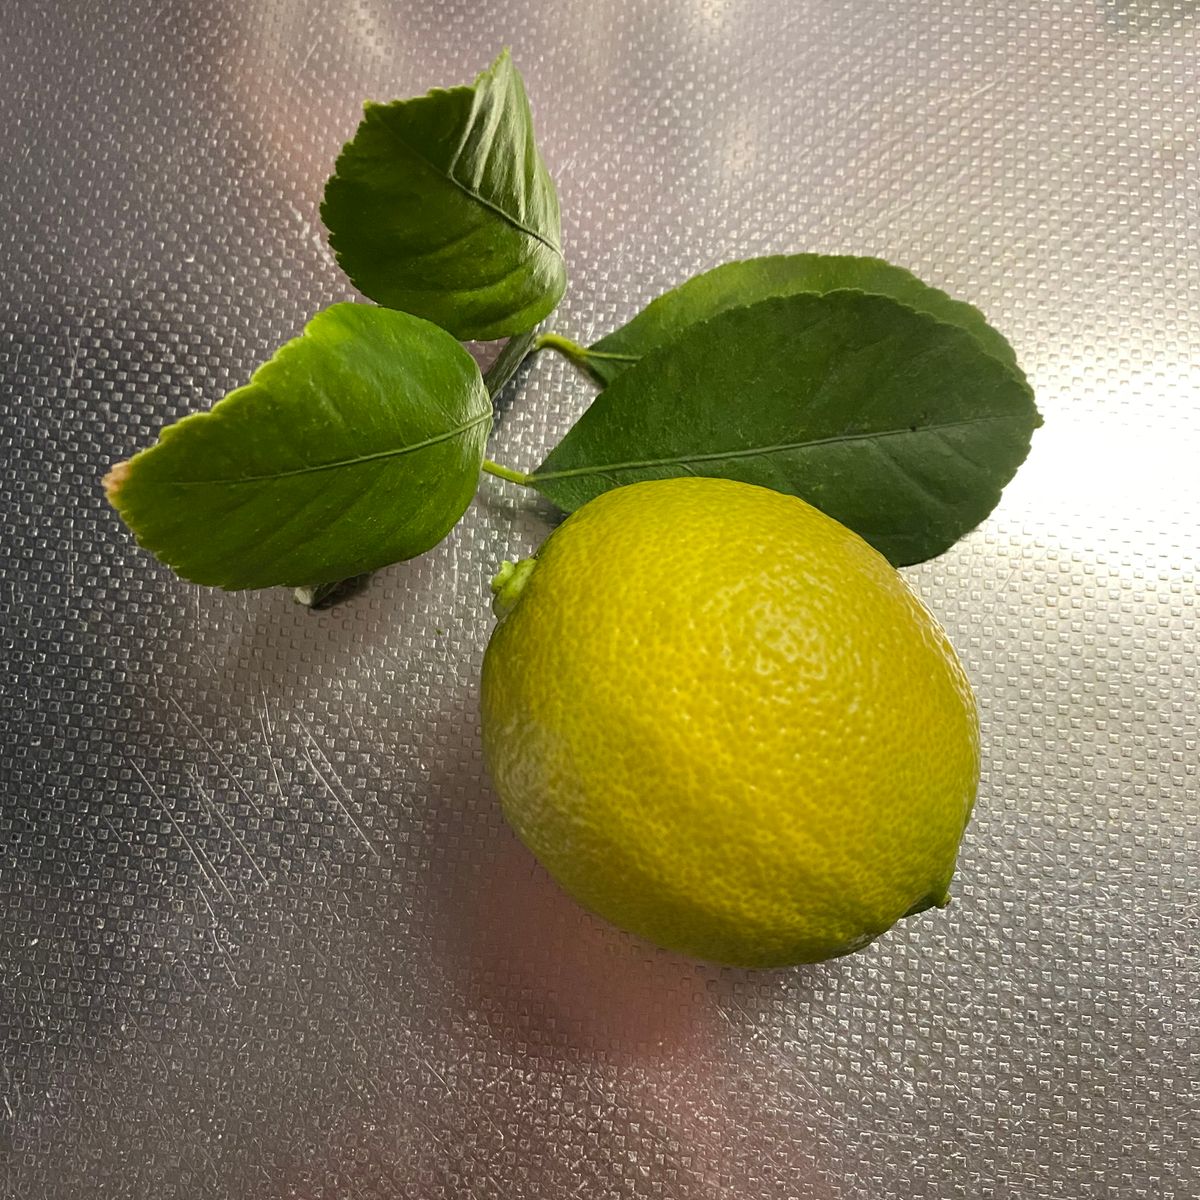 初心者がトゲなしリスボンレモン栽培🍋 レモン収穫